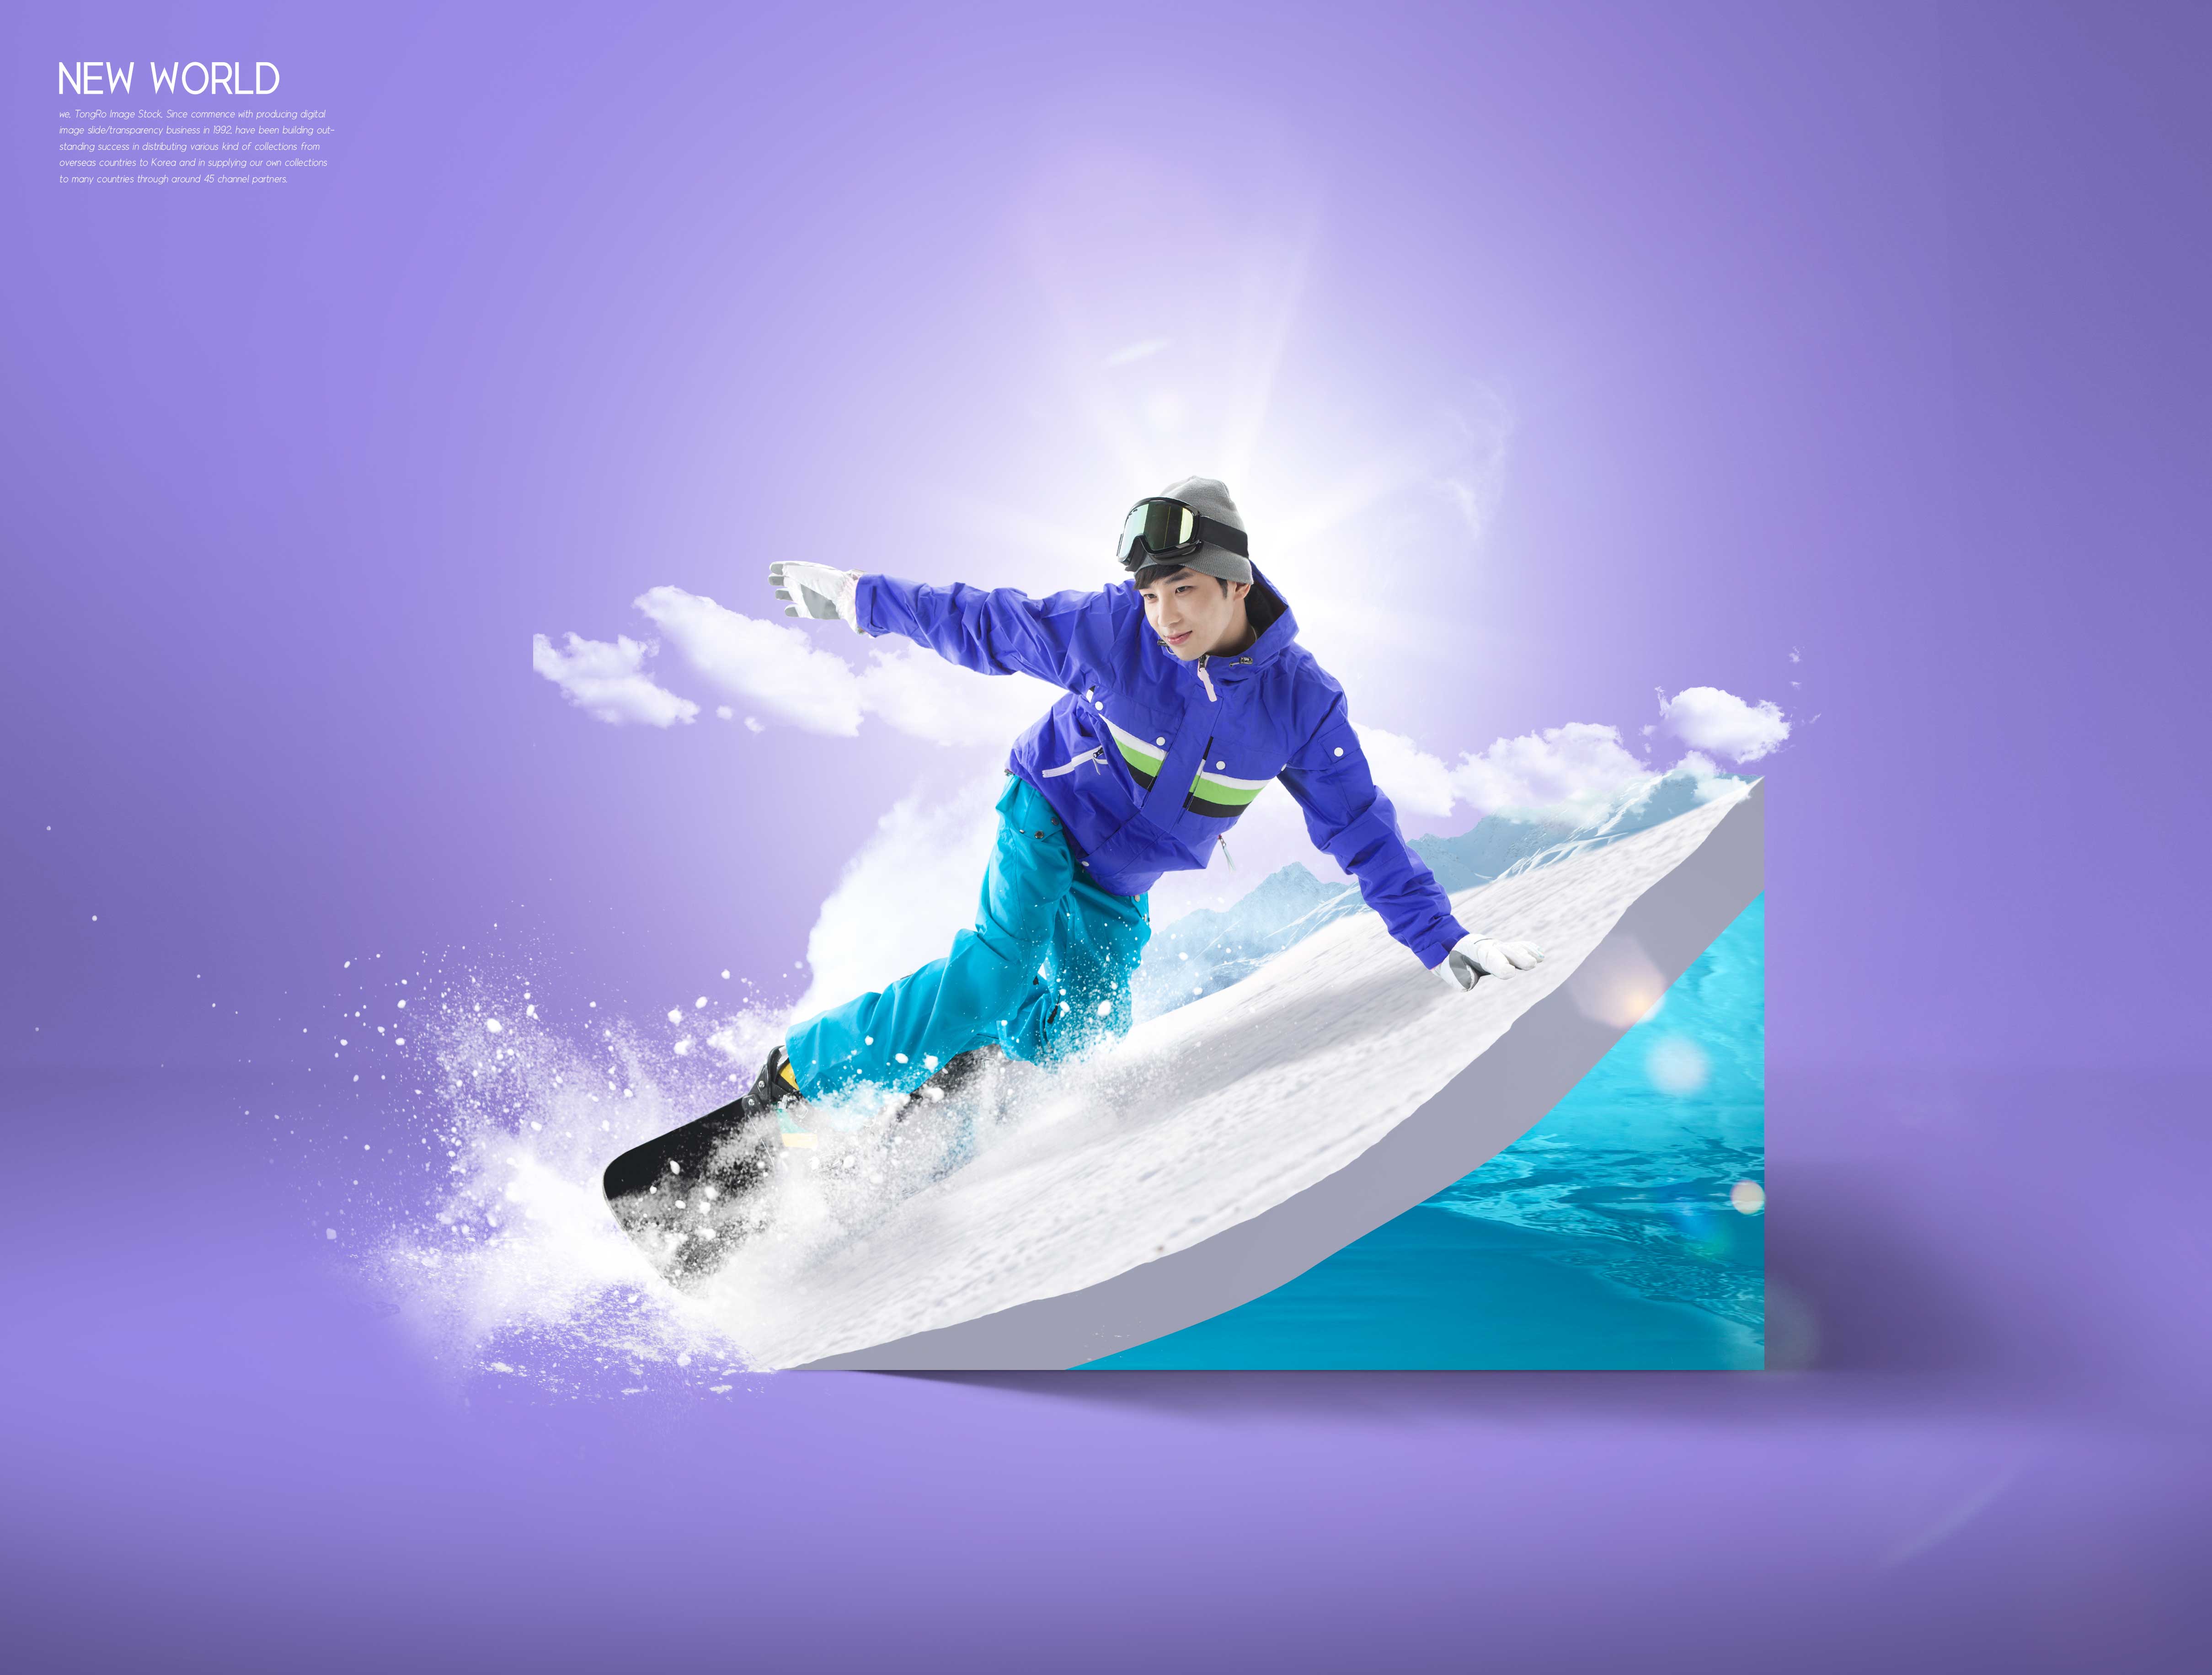 雪地滑雪活动推广海报图形psd模板设计素材模板